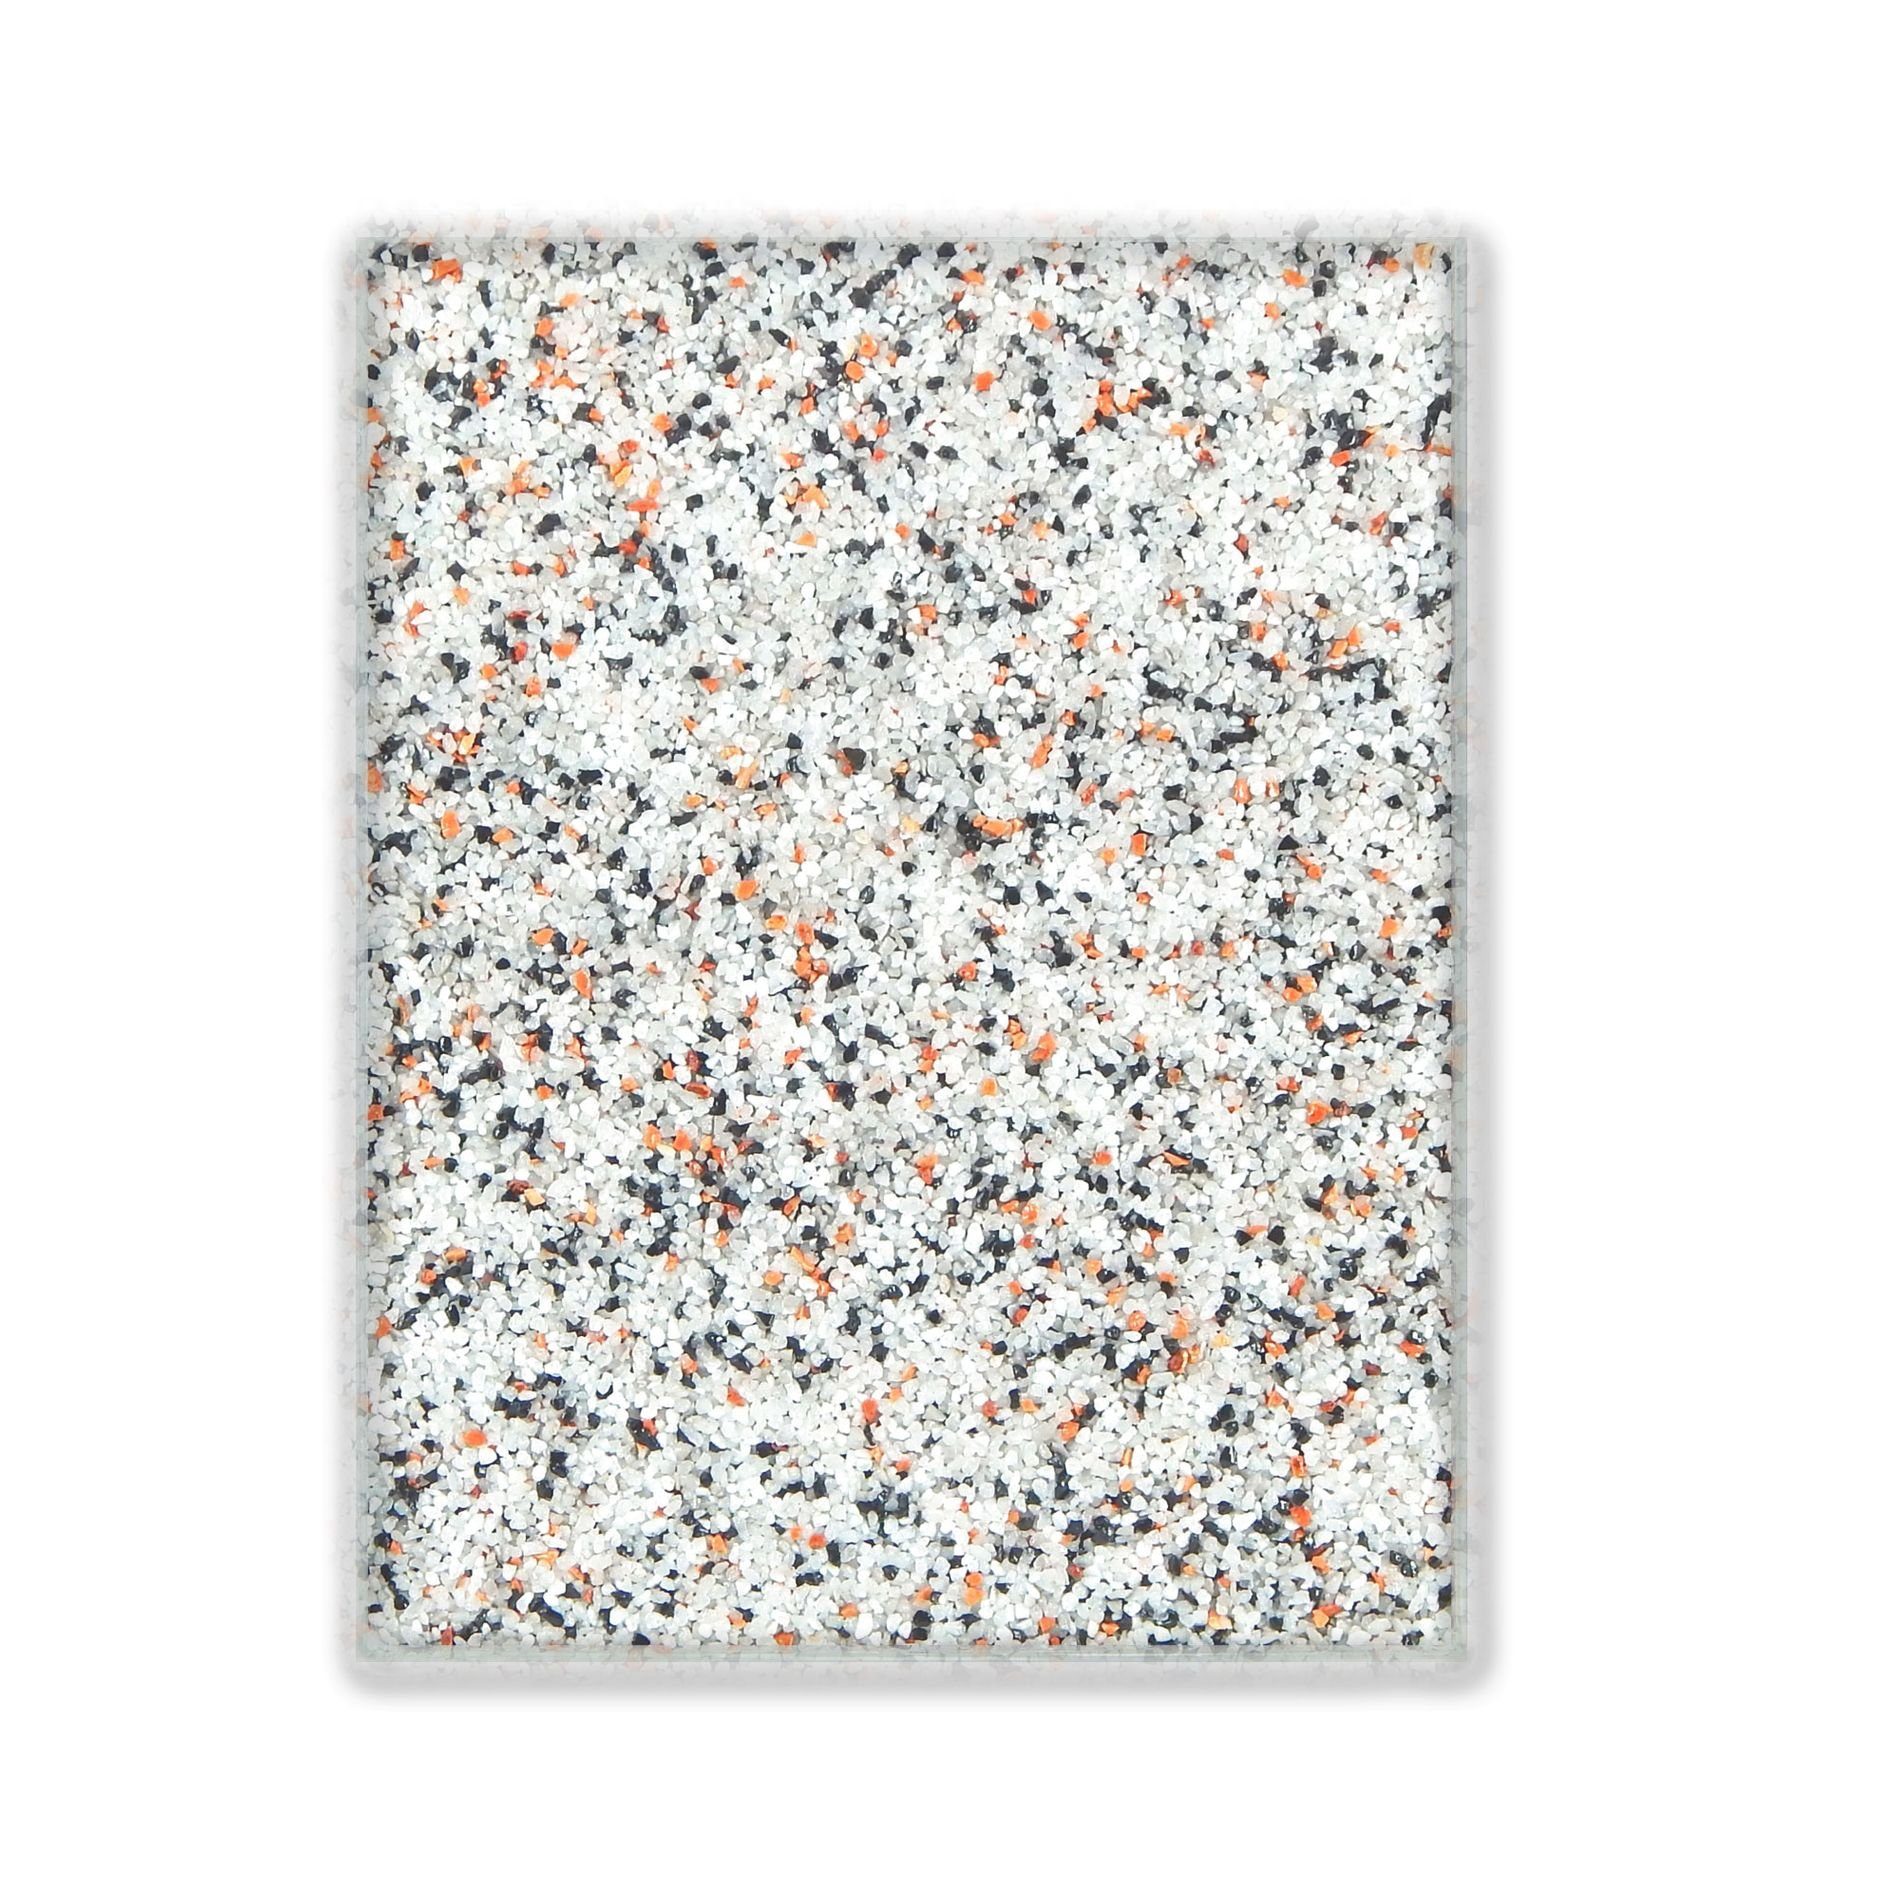 Terralith® Designboden Farbmuster Kompaktboden -mix palermo-, Originalware aus der Charge, die wir in diesem Moment im Abverkauf haben.